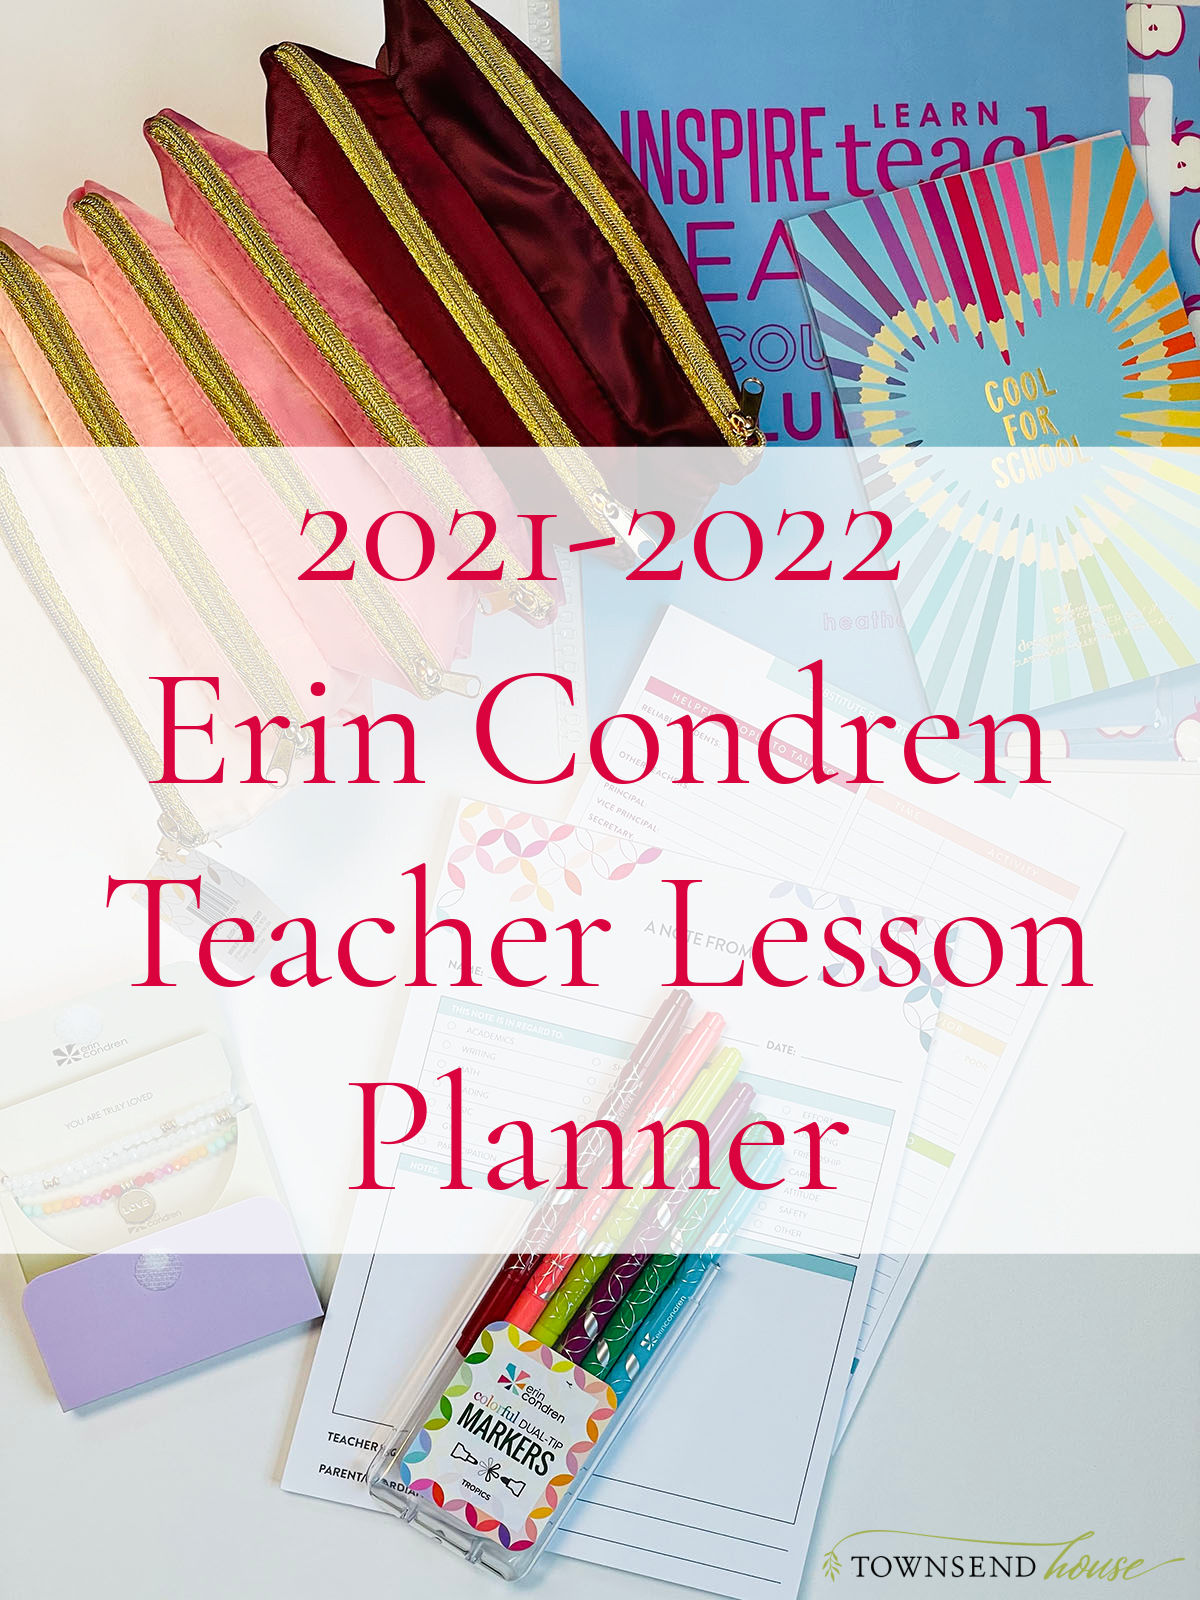 2021-2022 Erin Condren Teacher Lesson Planner